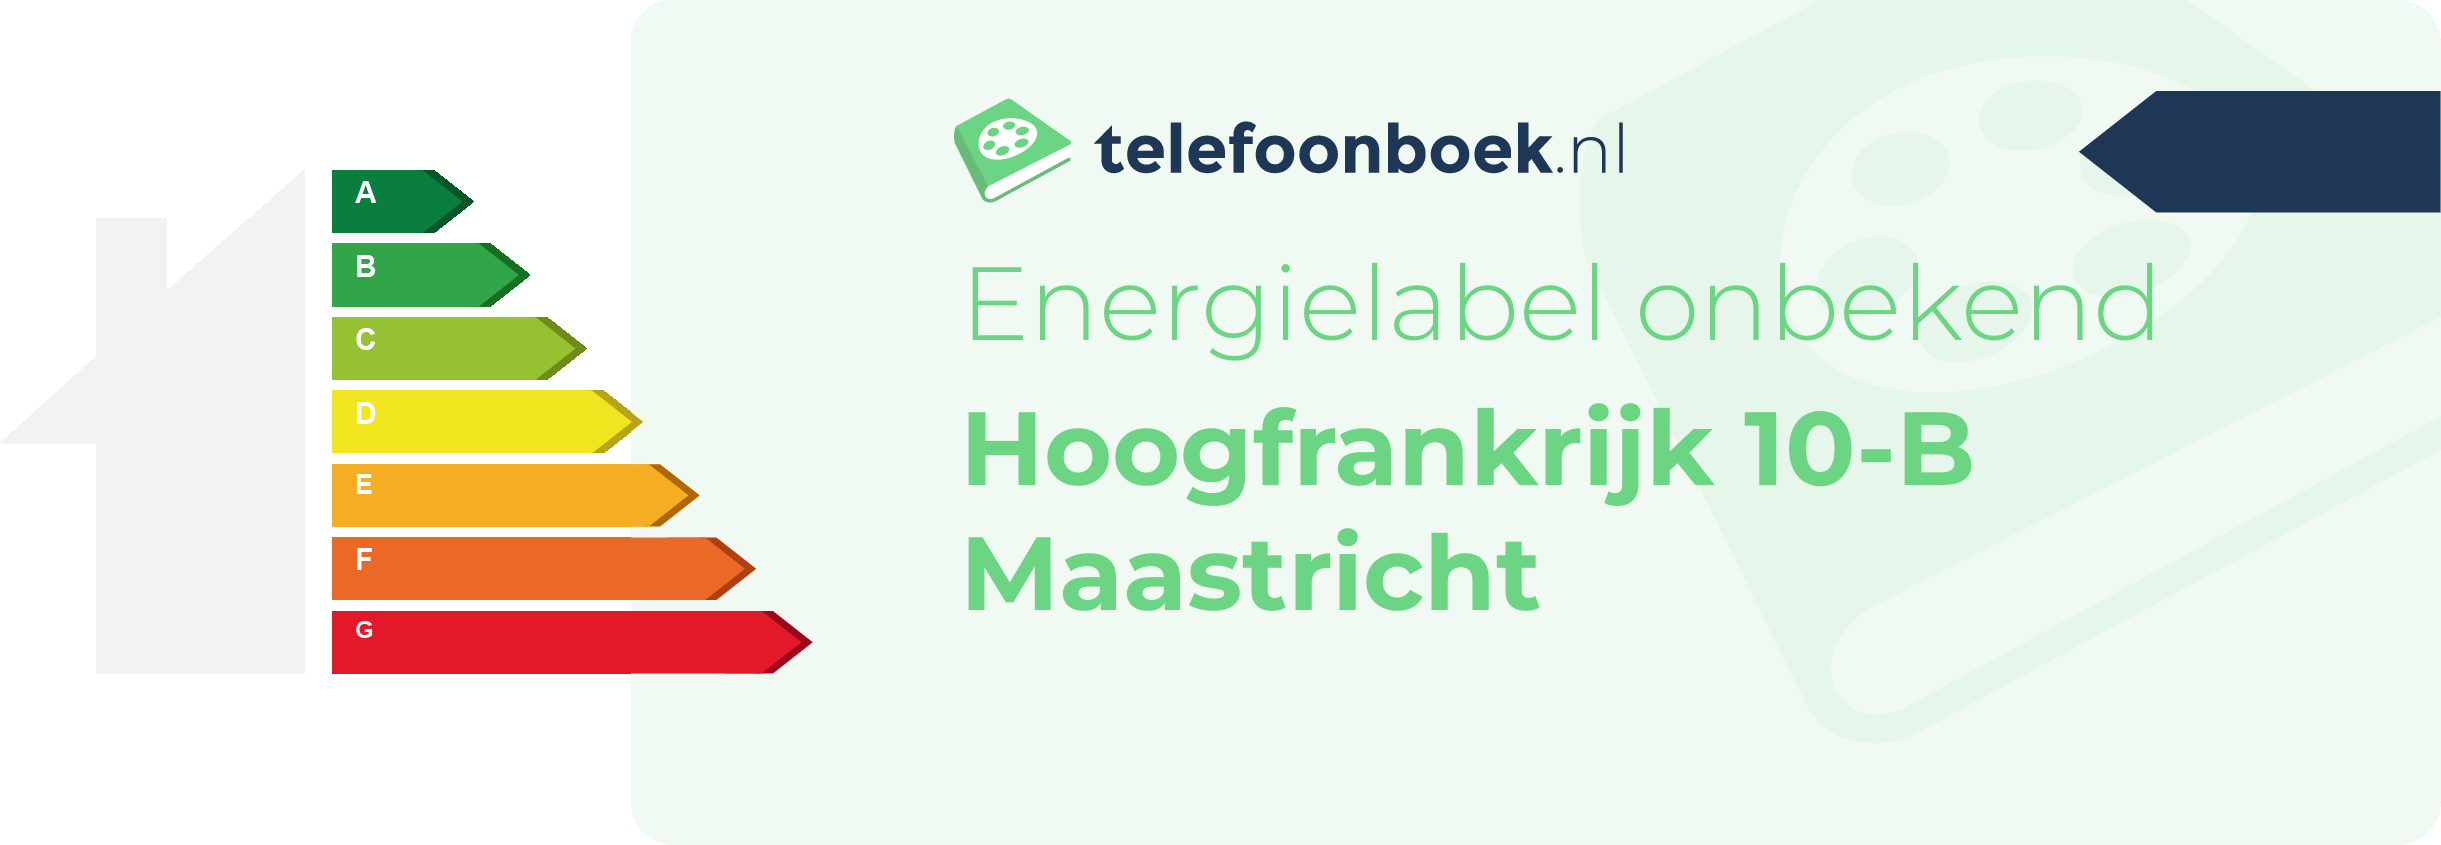 Energielabel Hoogfrankrijk 10-B Maastricht